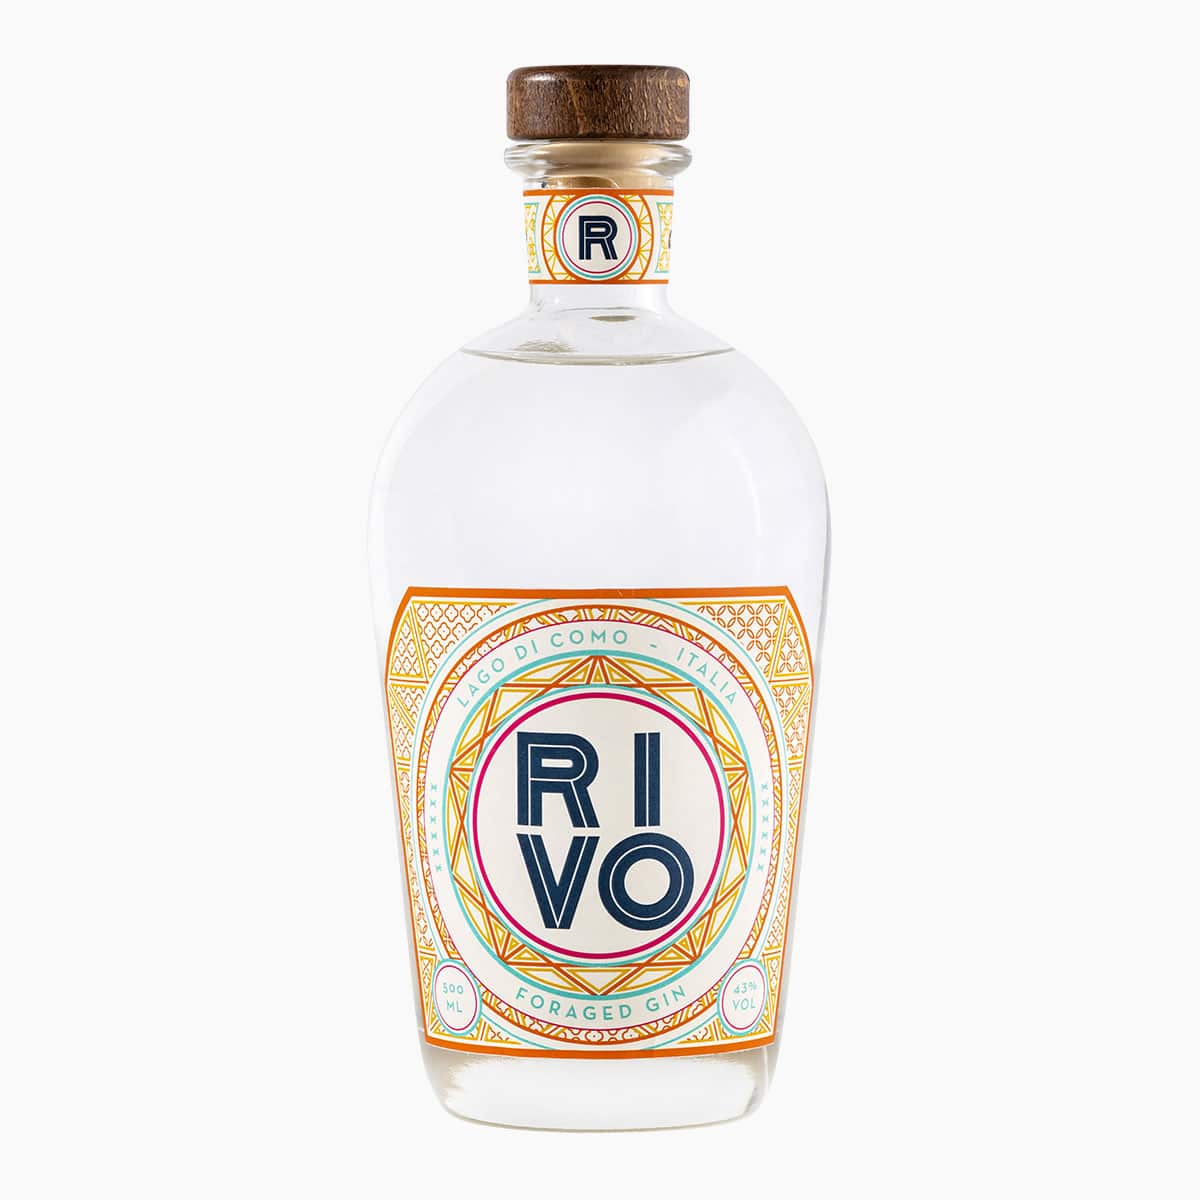 Brug RIVO Mediterranean Gin til en forbedret oplevelse